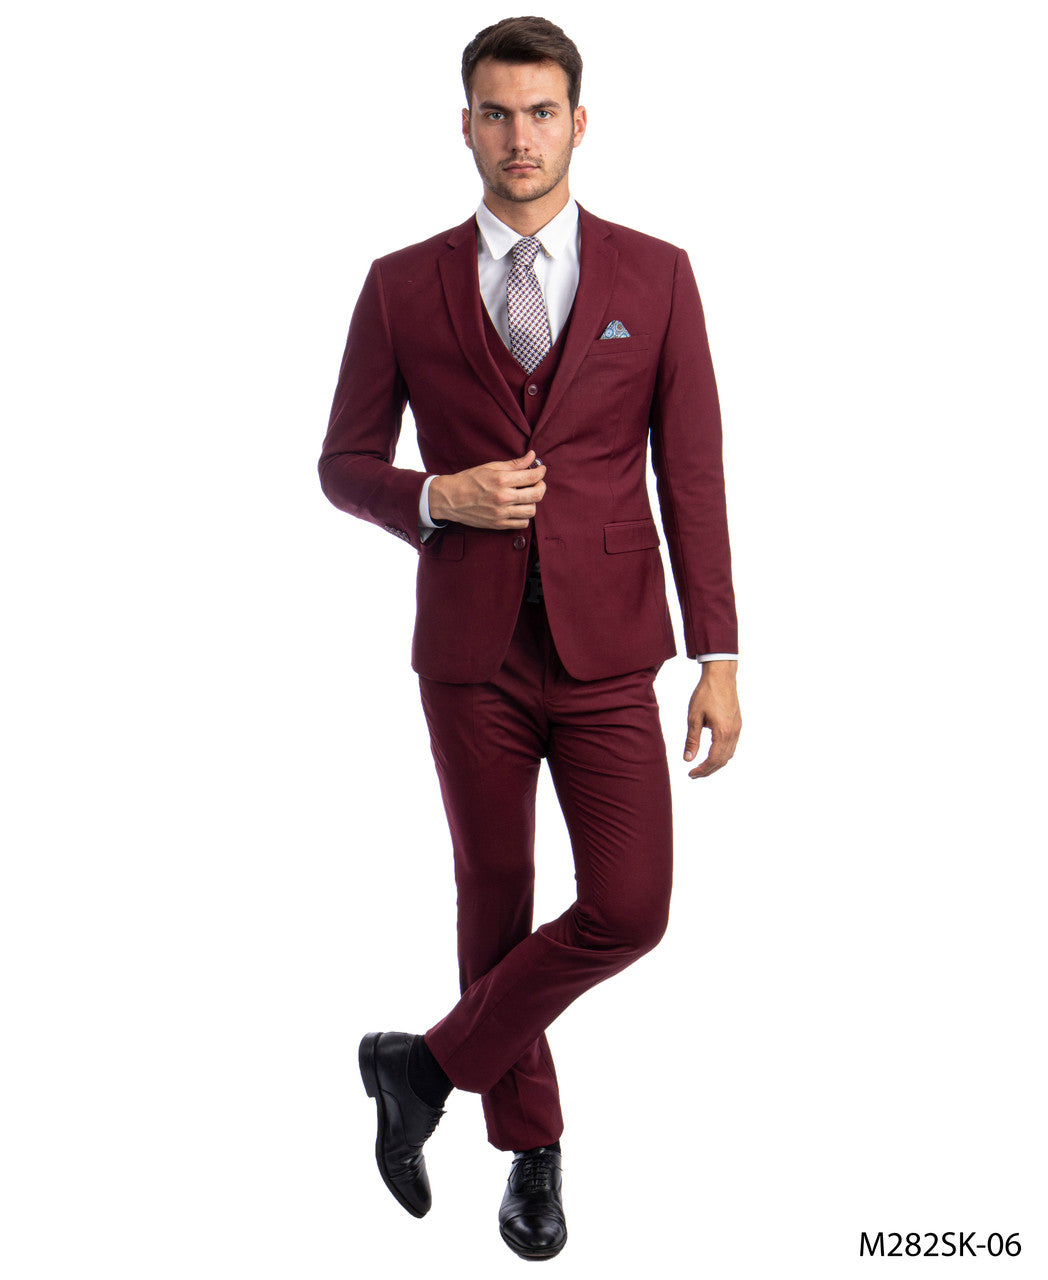 3 Piece Men's Solid Slim Fit Suit - LAM282SKSA-06 - BURGUNDY - Mens Suits LA Merchandise